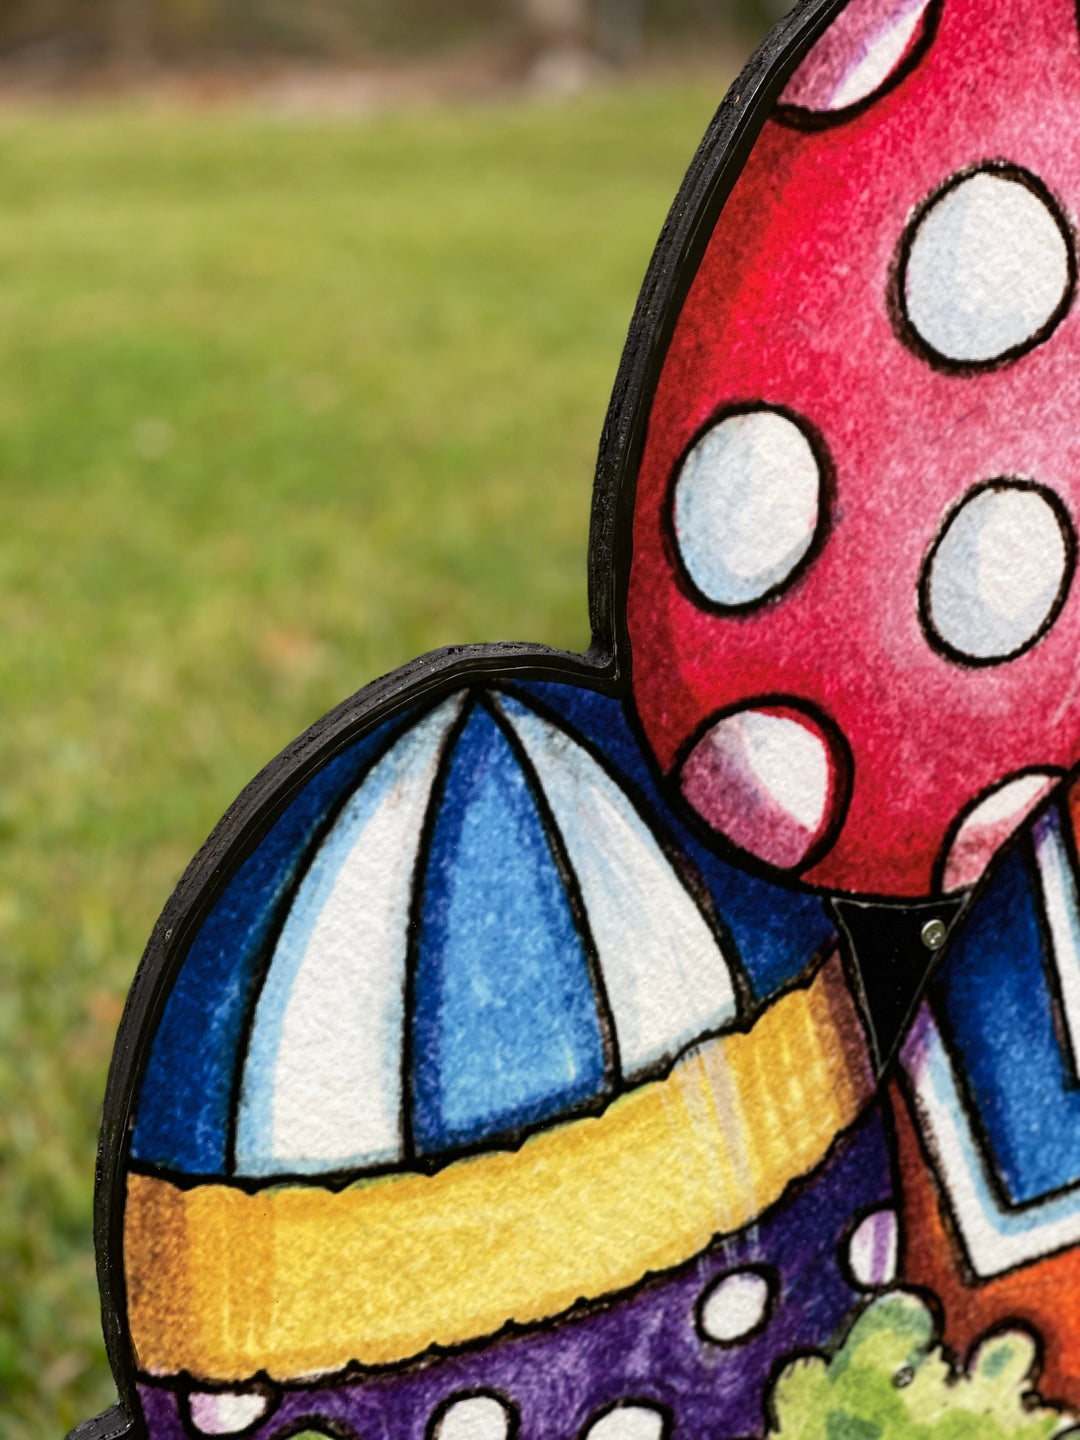 Easter Egg Yard Art Sign Decoration